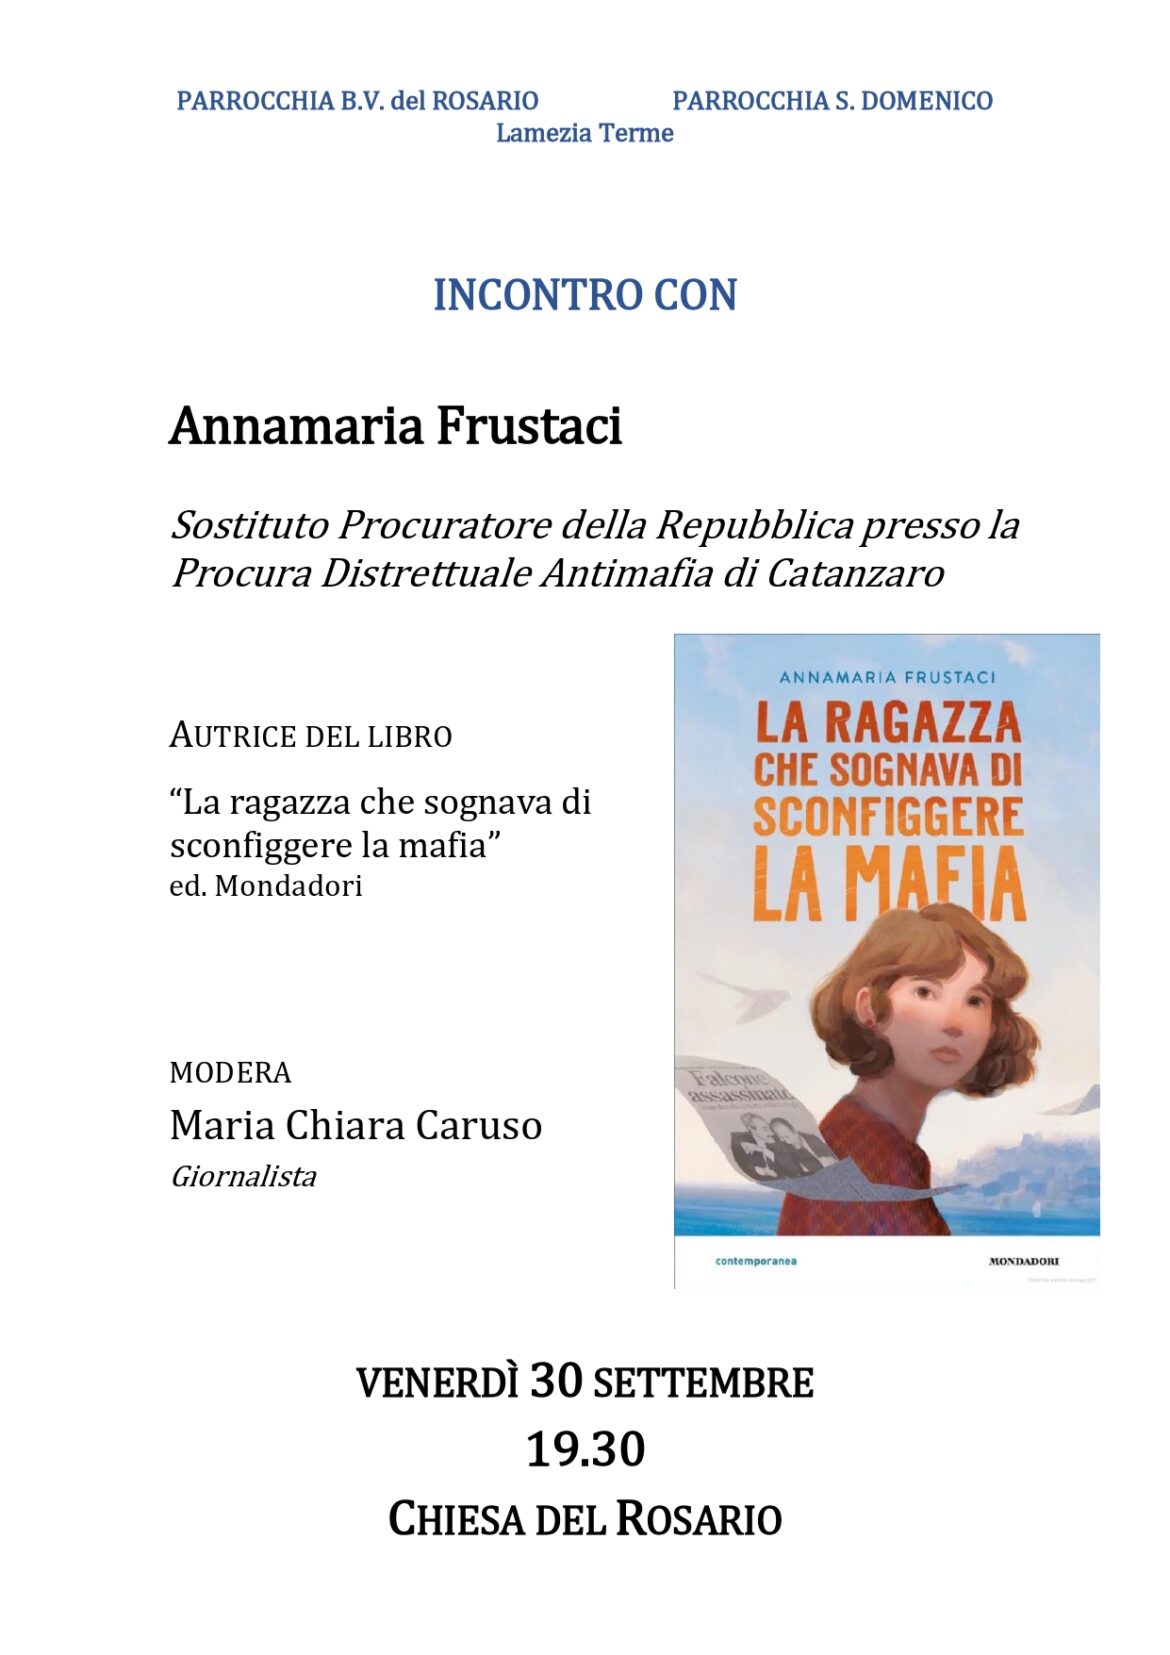 Lamezia Terme, testimonianza del pm Annamaria Frustaci venerdì 30 settembre alla Chiesa del Rosario